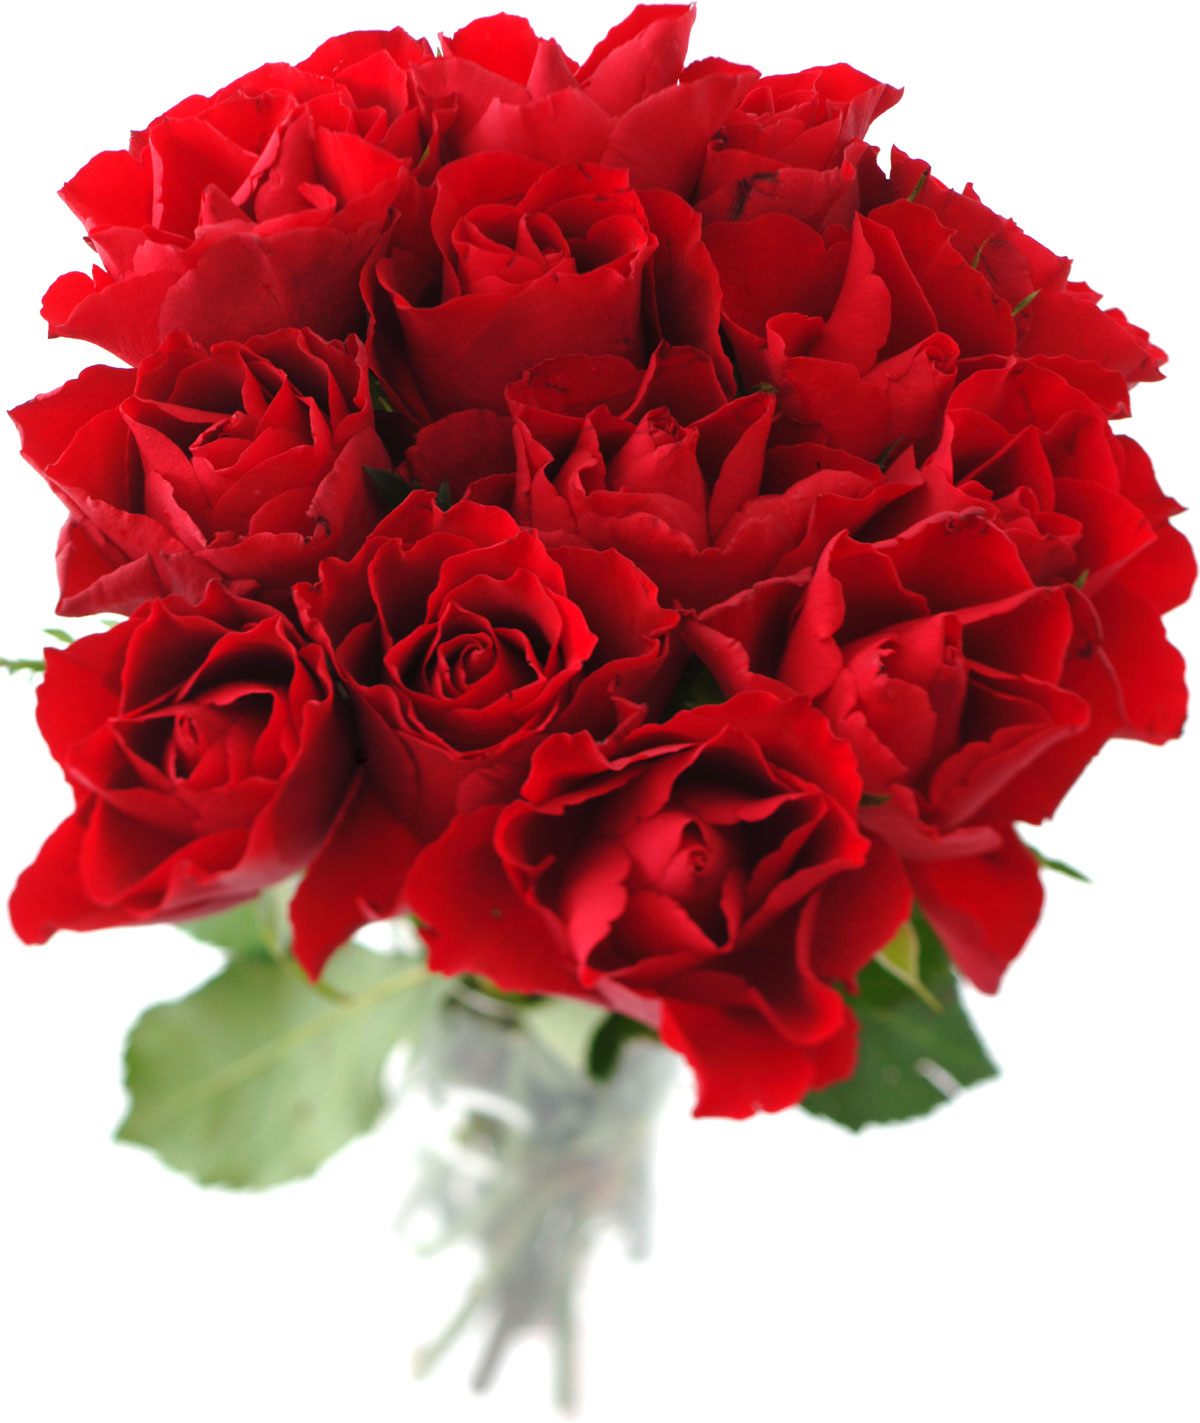 花や葉の写真 画像 フリー素材 花束no 910 赤 バラの花束